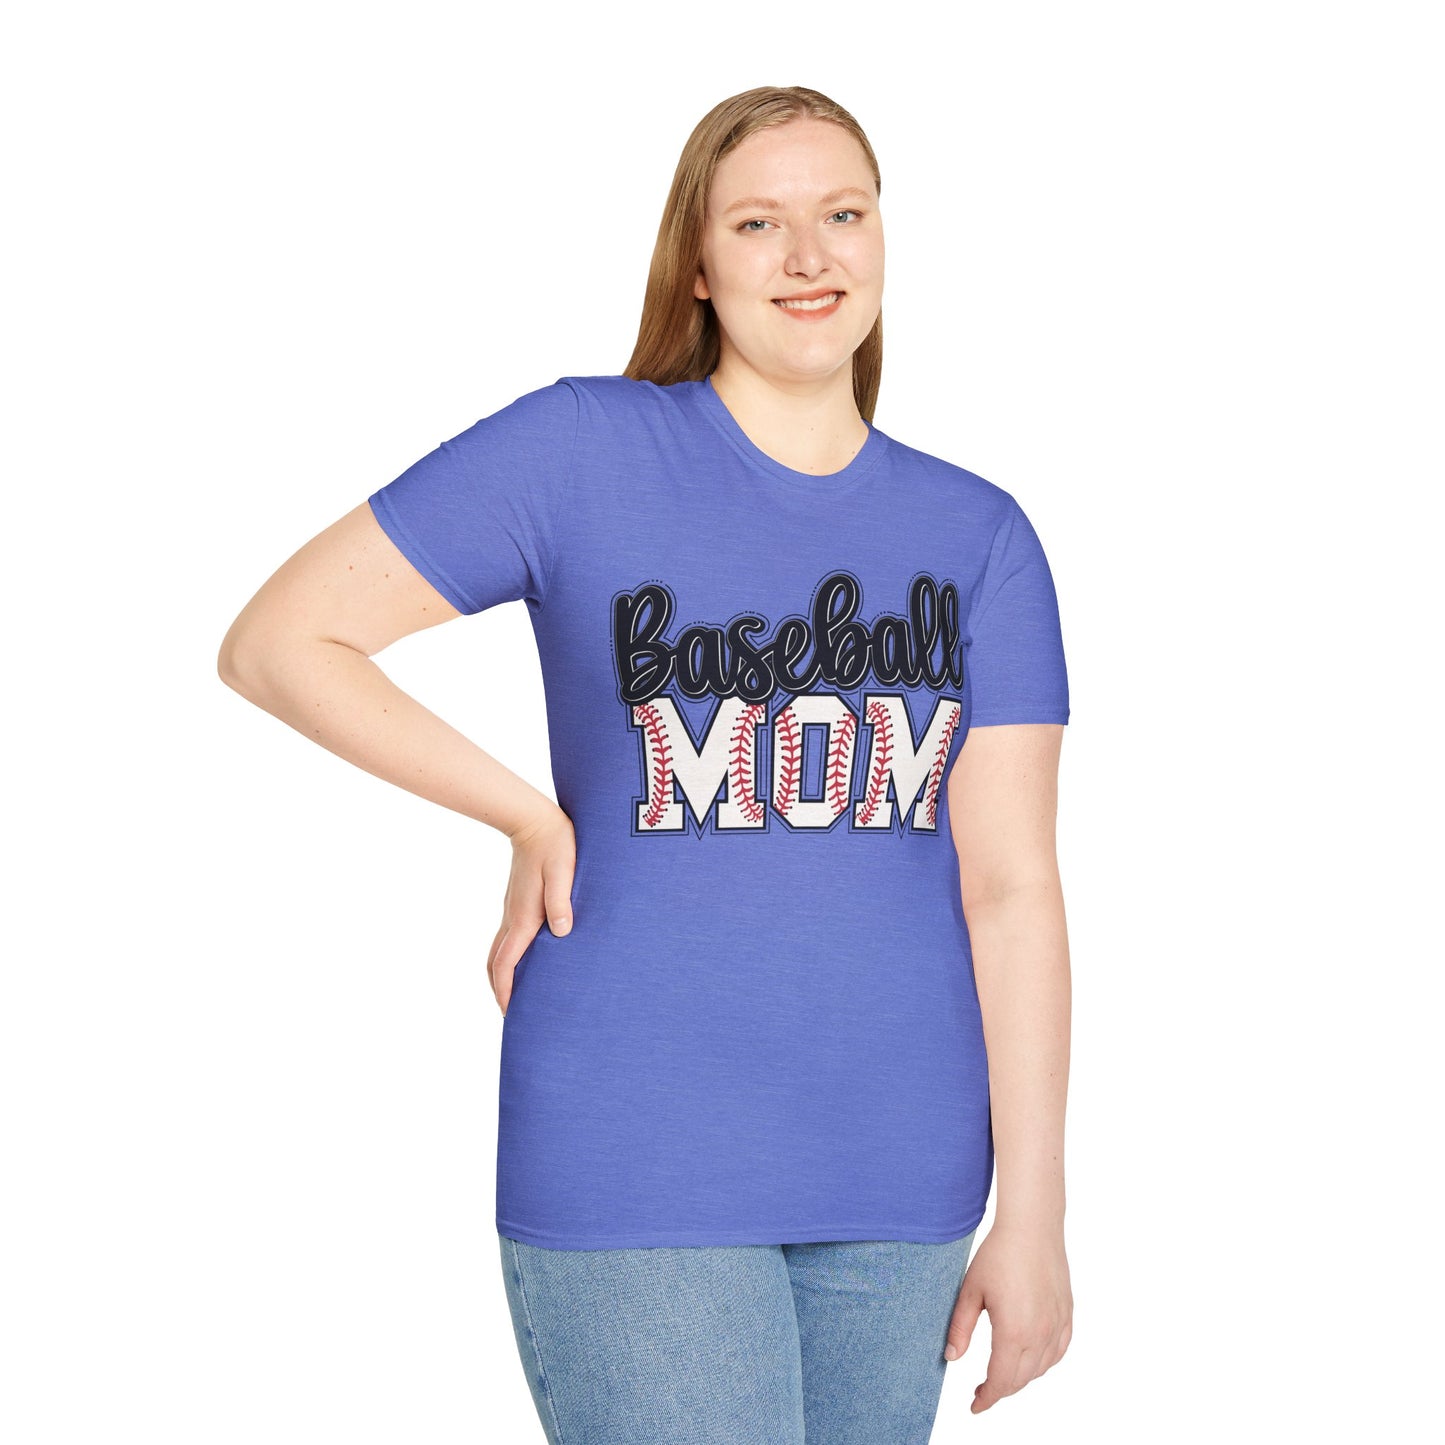 Unisex Softstyle T-Shirt - Baseball Mom 2